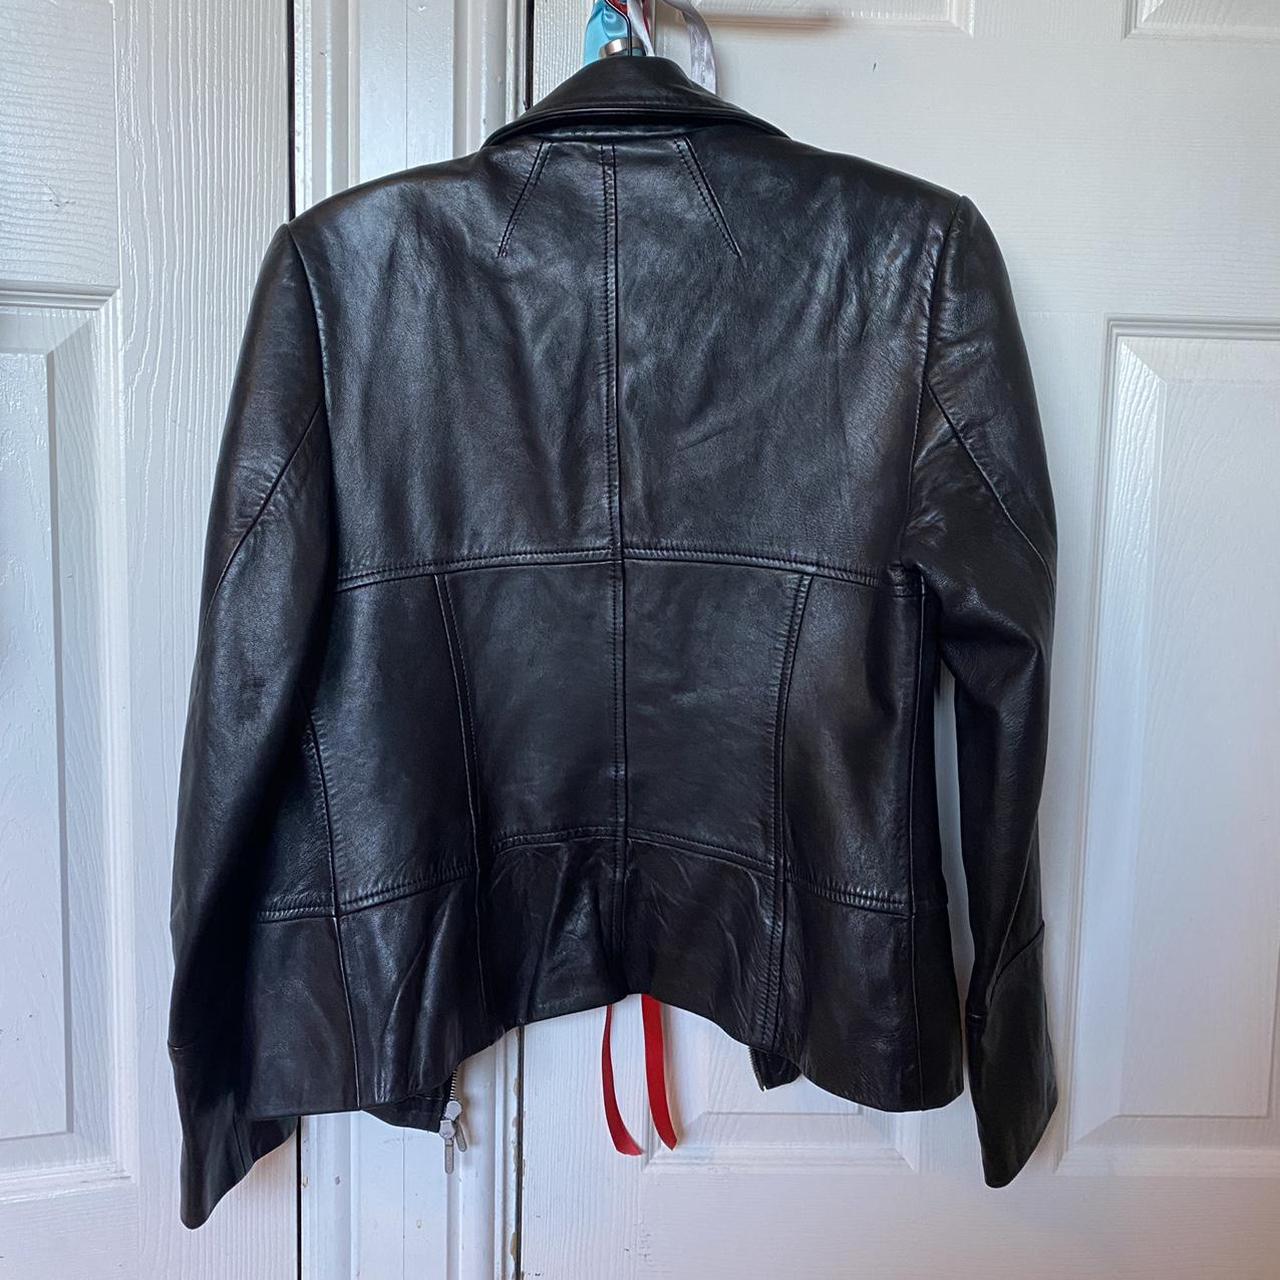 Most stunning vintage real leather jacket from karen... - Depop